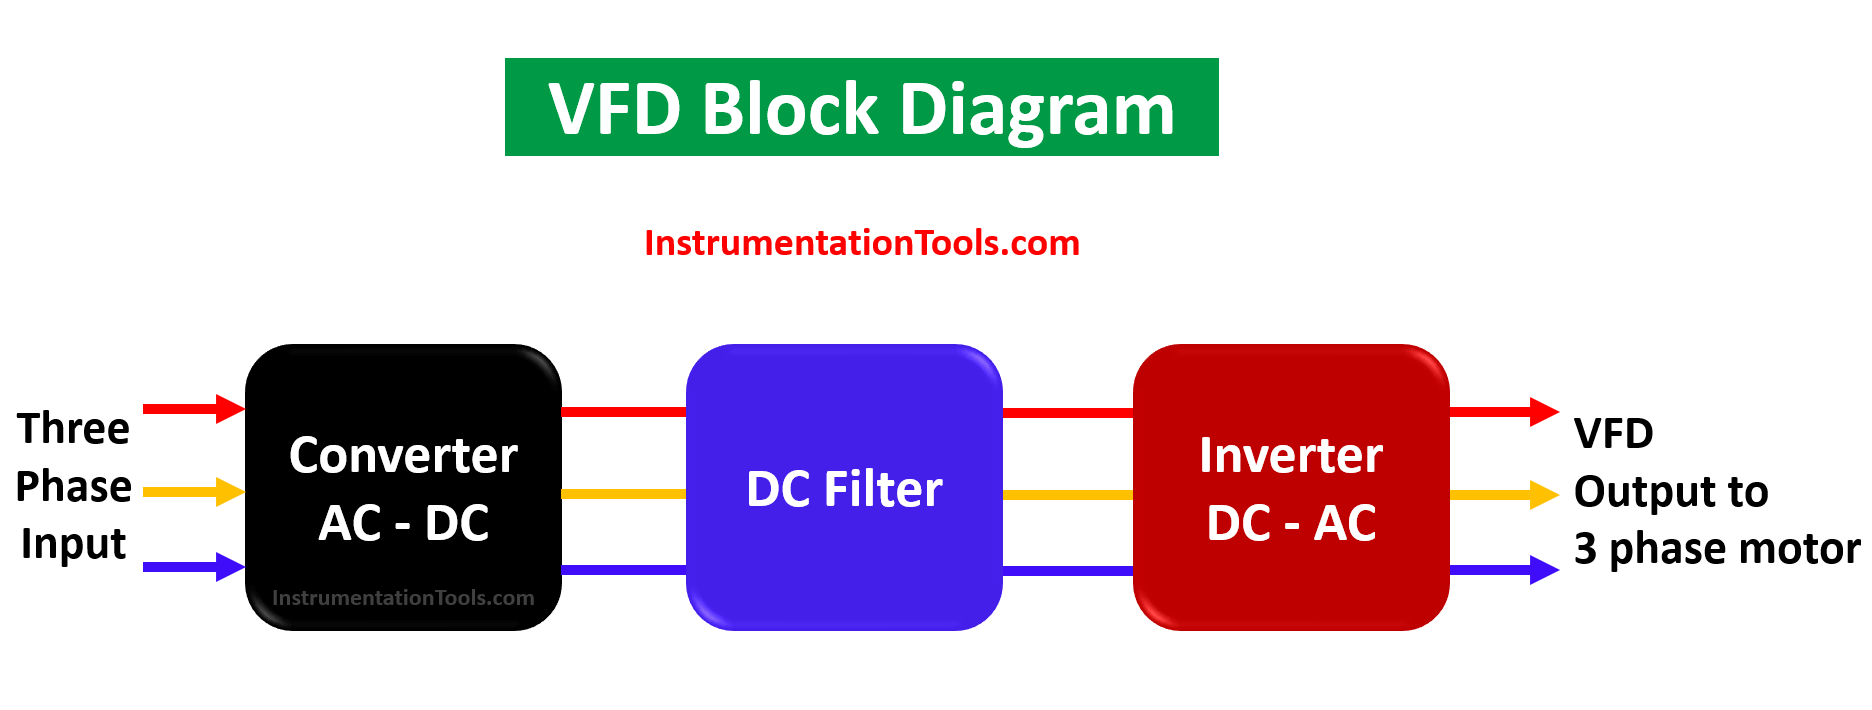 VFD Block Diagram